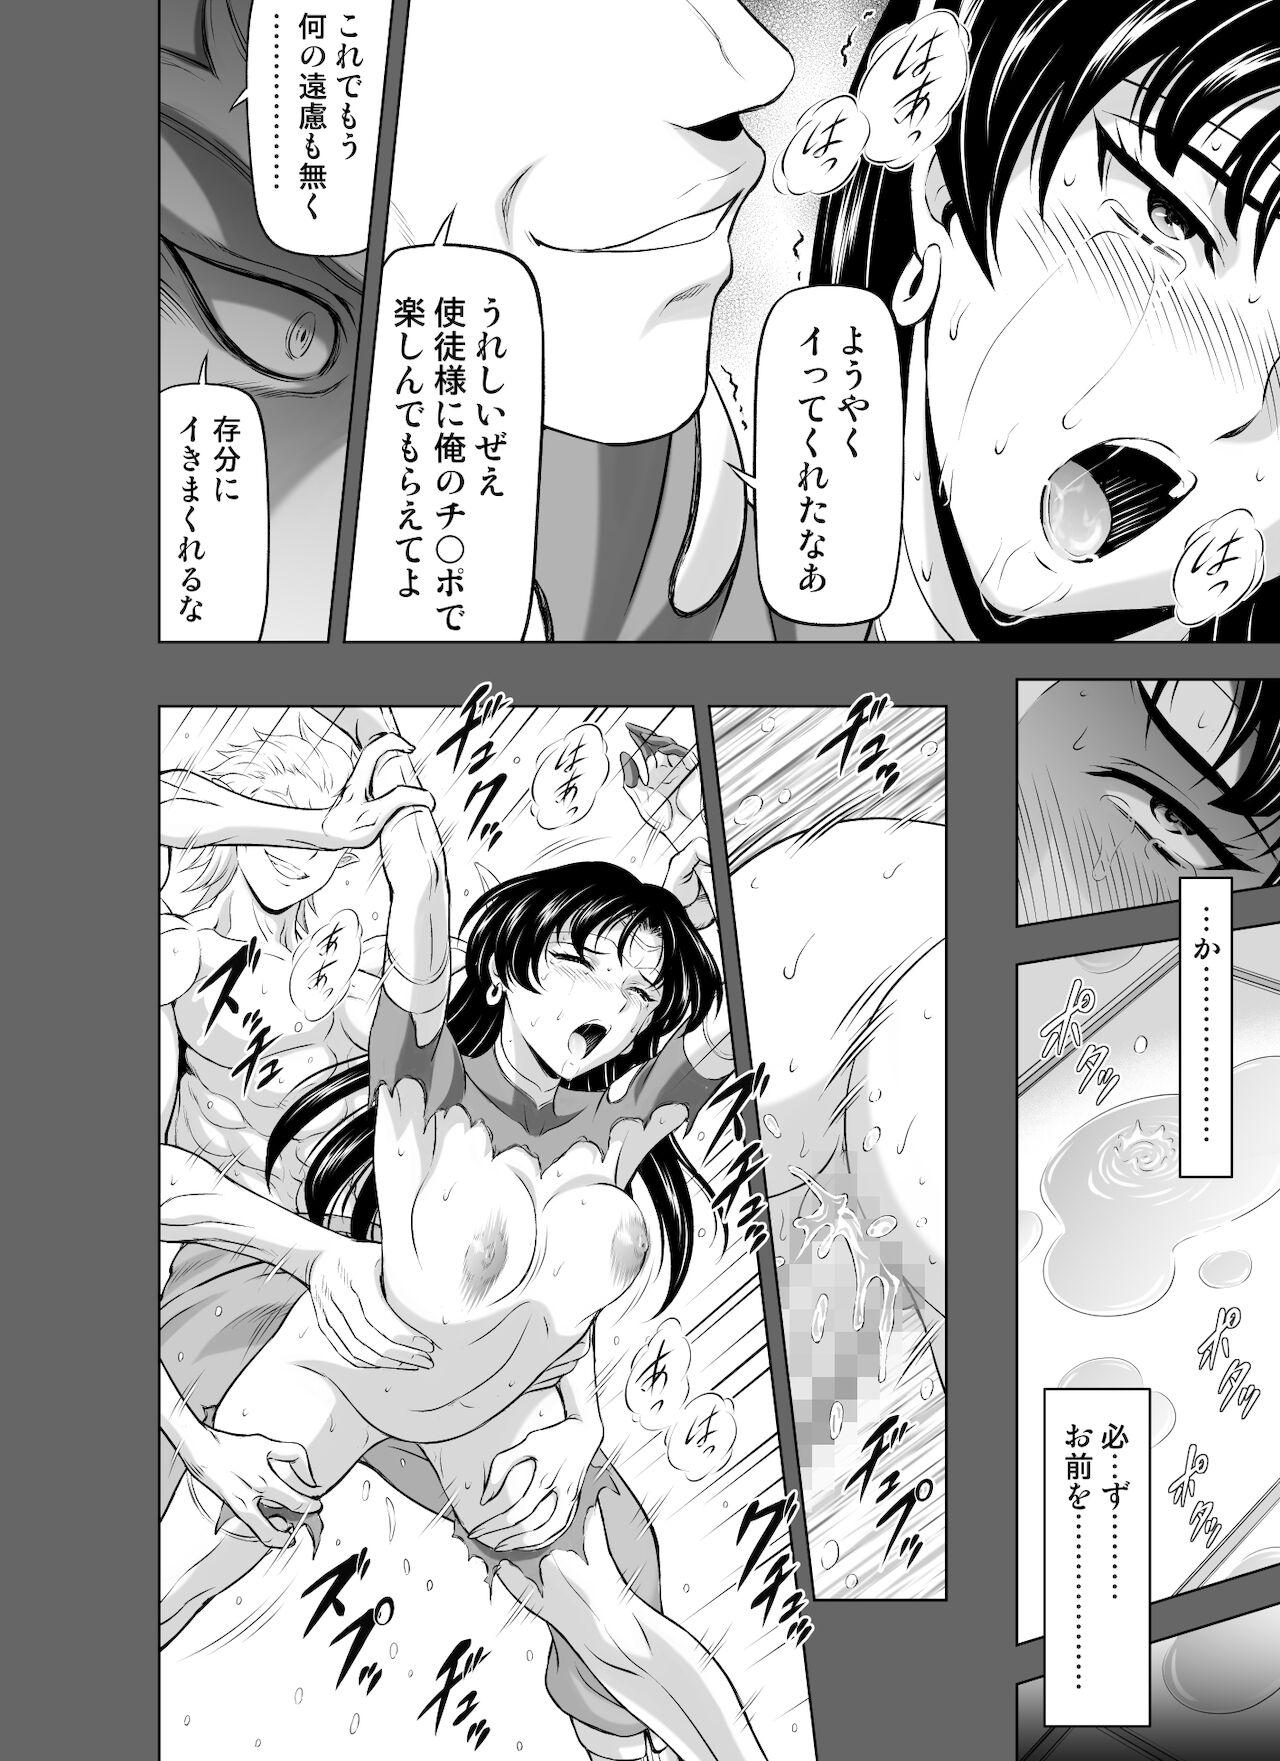 Reties no Michibiki Vol. 8 23